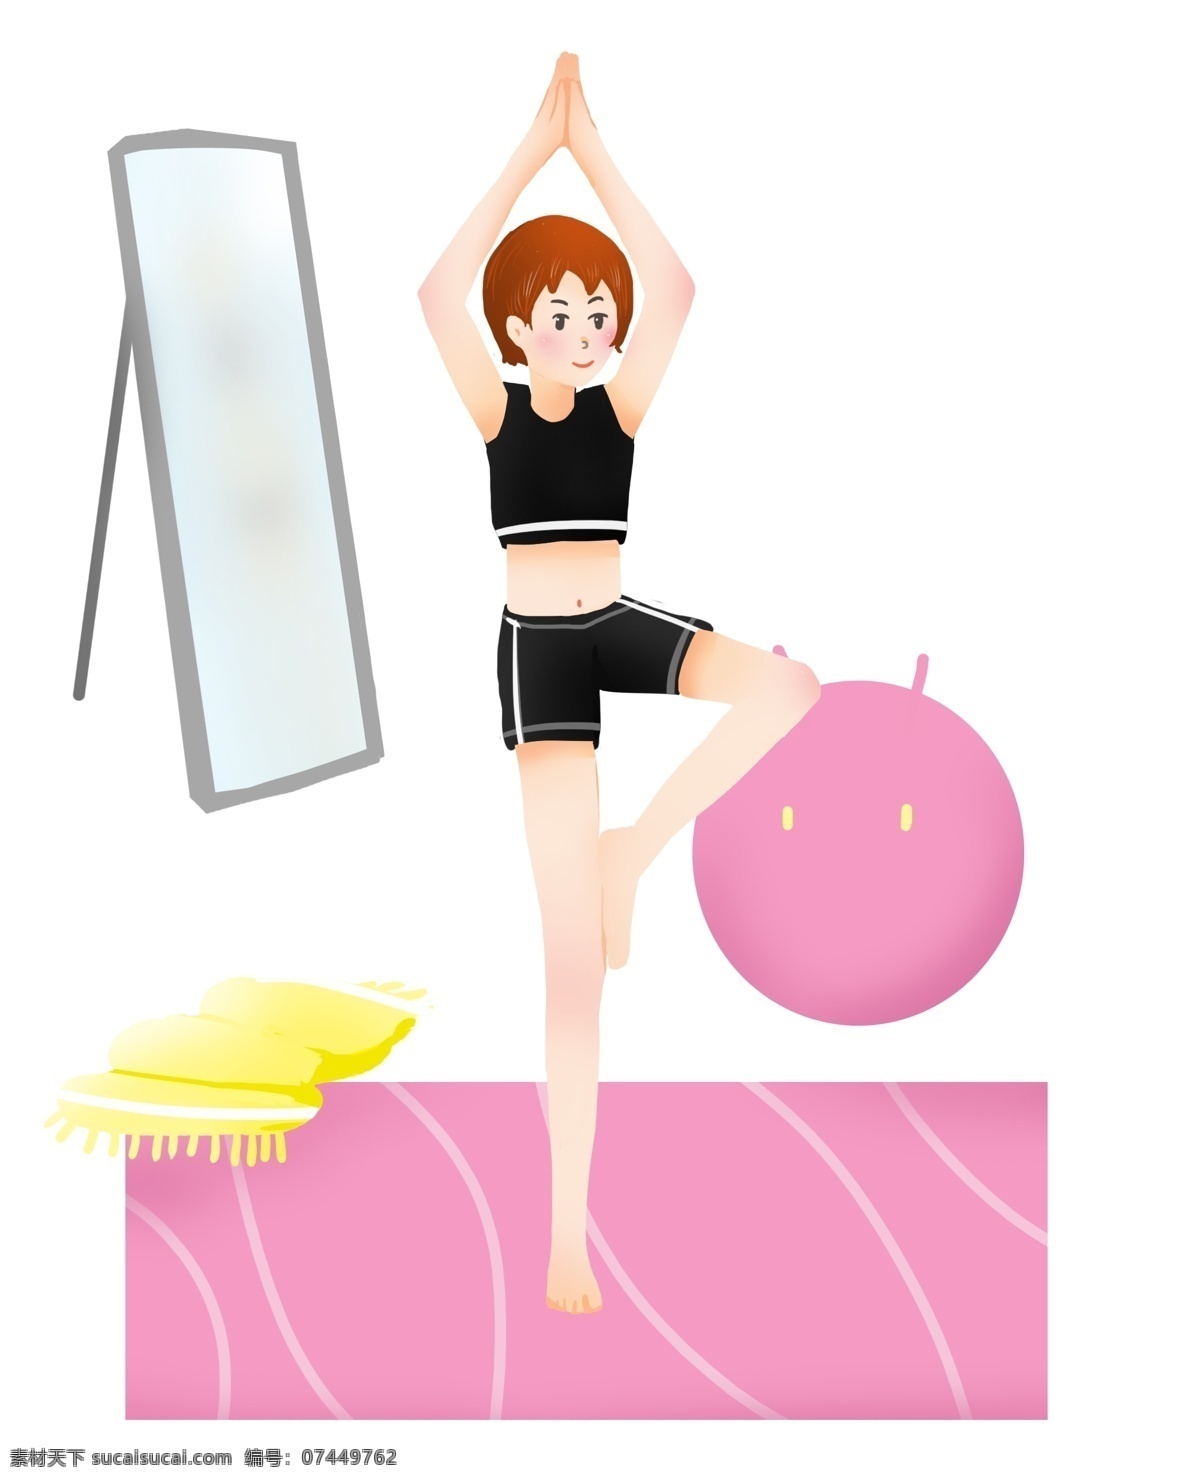 瑜伽 健身 运动 插画 卡通插画 健身运动 体育项目 强身健体 锻炼身体 练瑜伽插画 紫色的瑜伽球